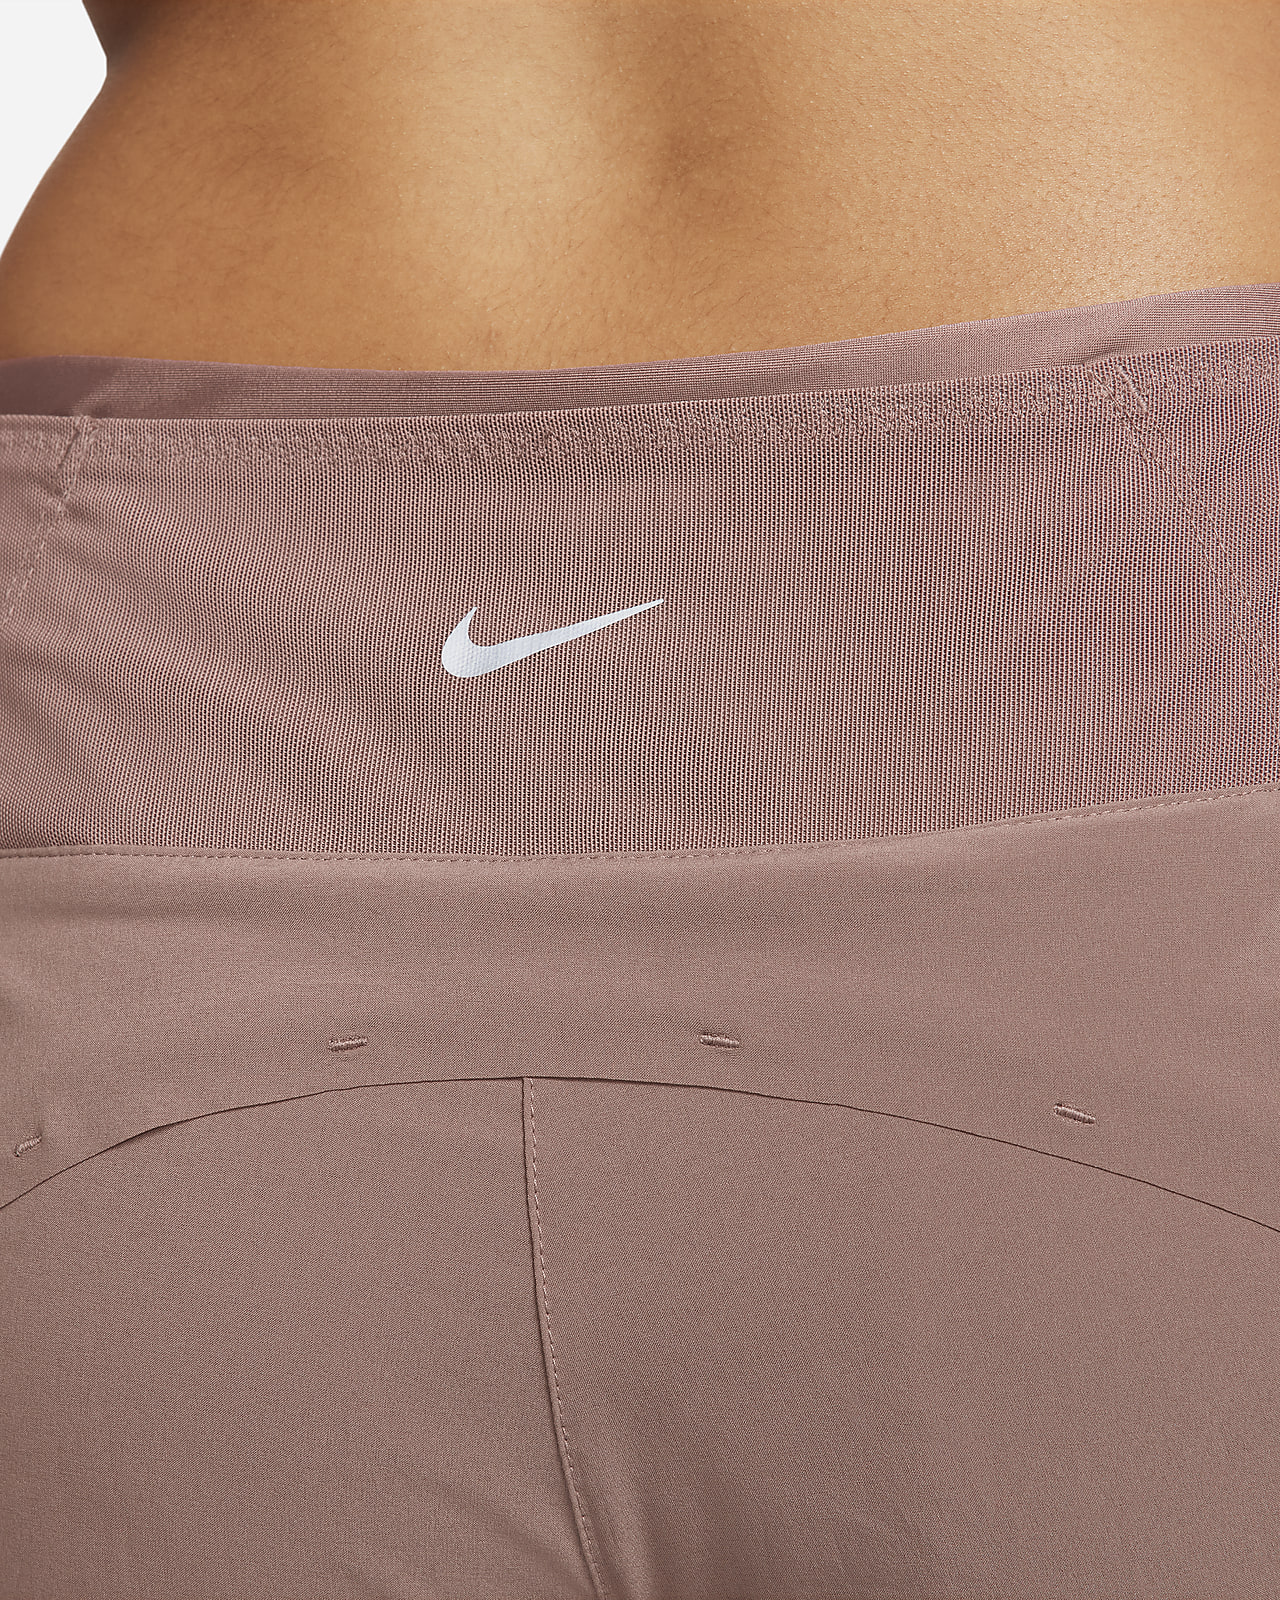 New Nike Women's RUNNING Short Tights (Small) CV2729-010